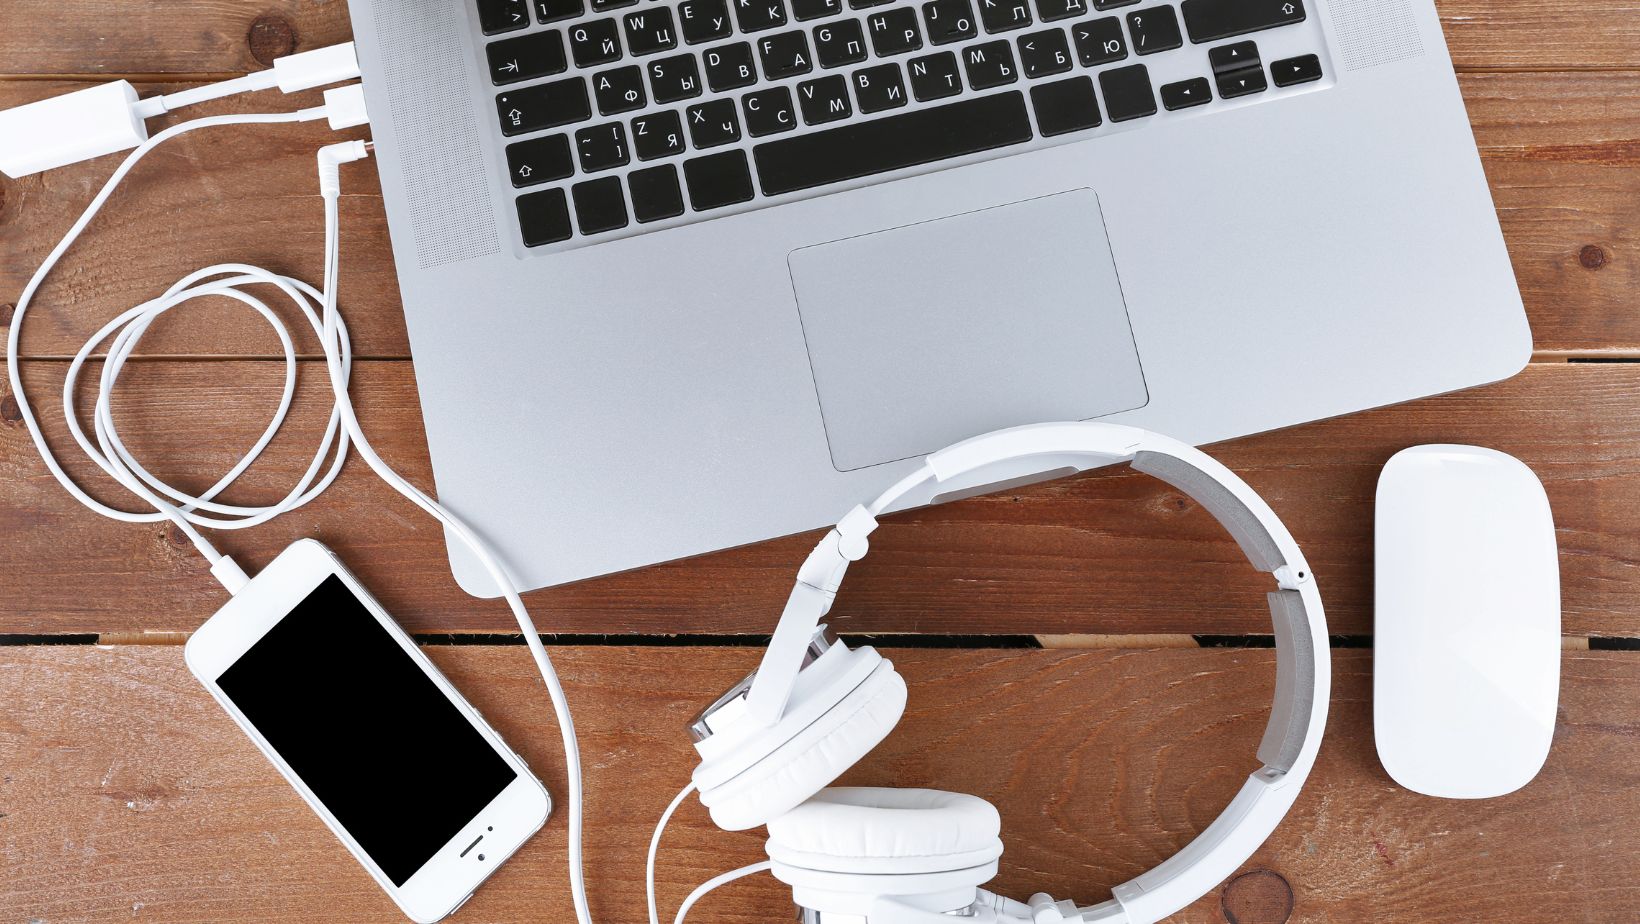 power cords for apple laptops